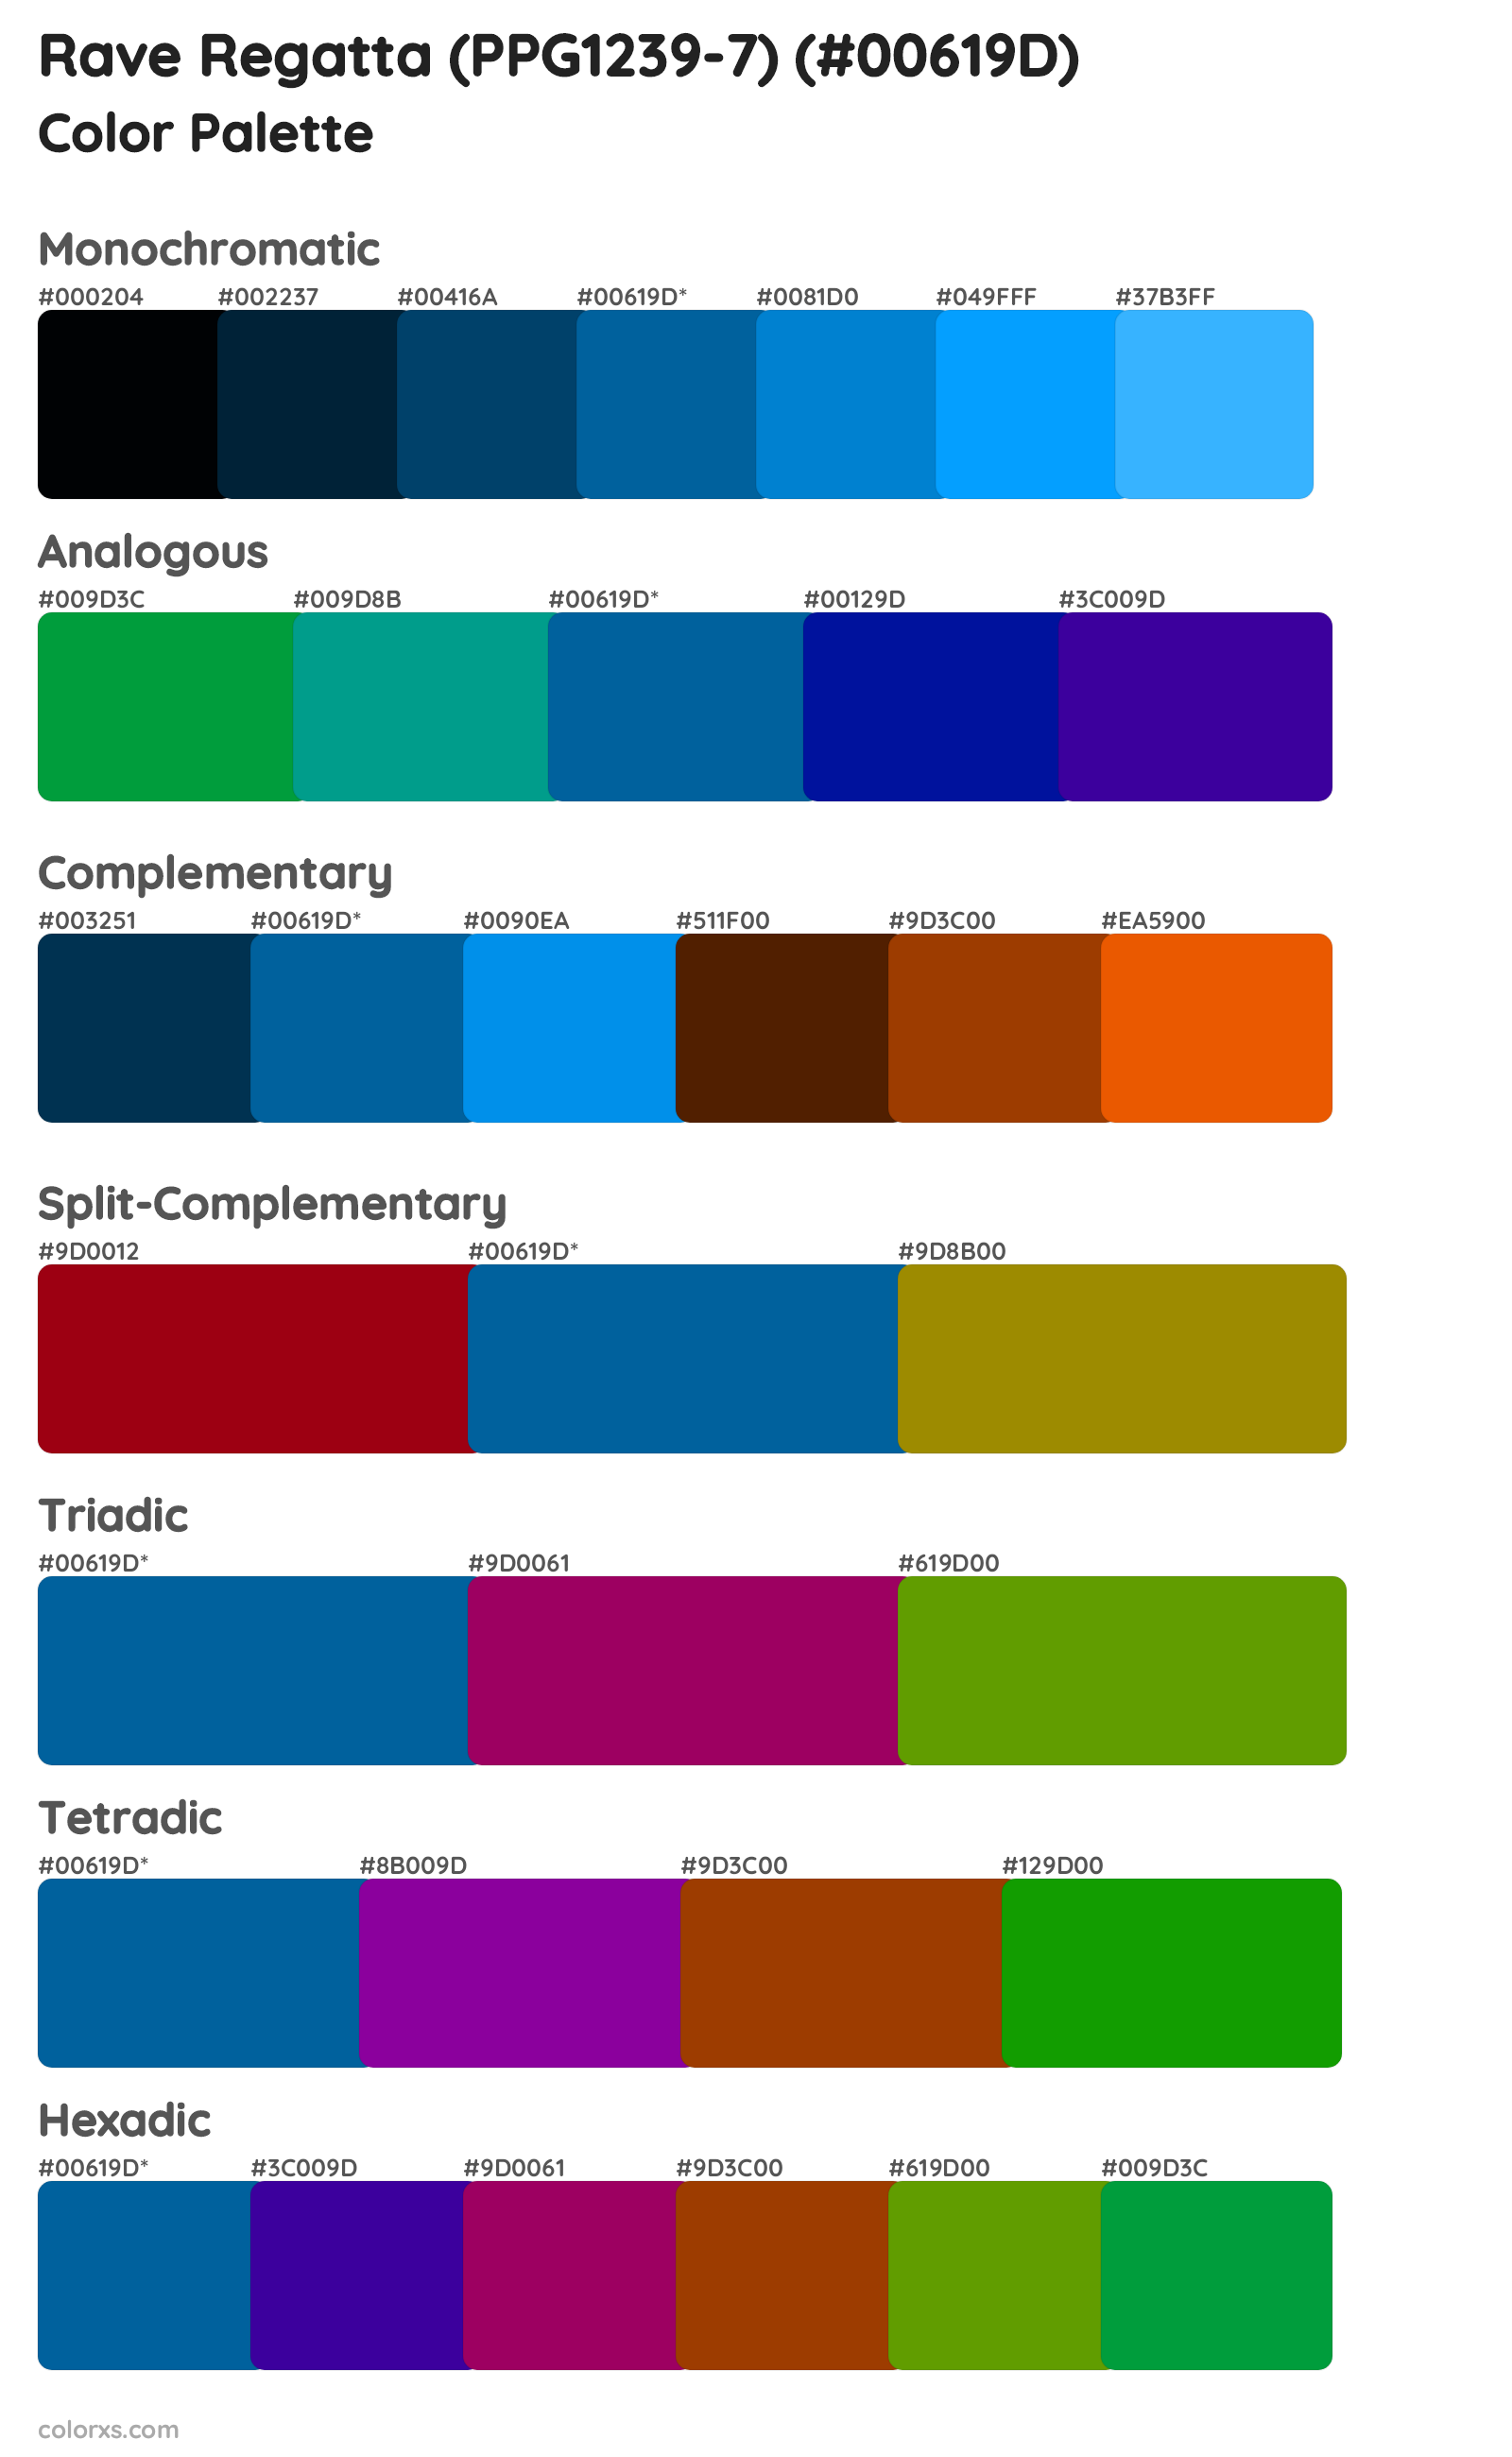 Rave Regatta (PPG1239-7) Color Scheme Palettes